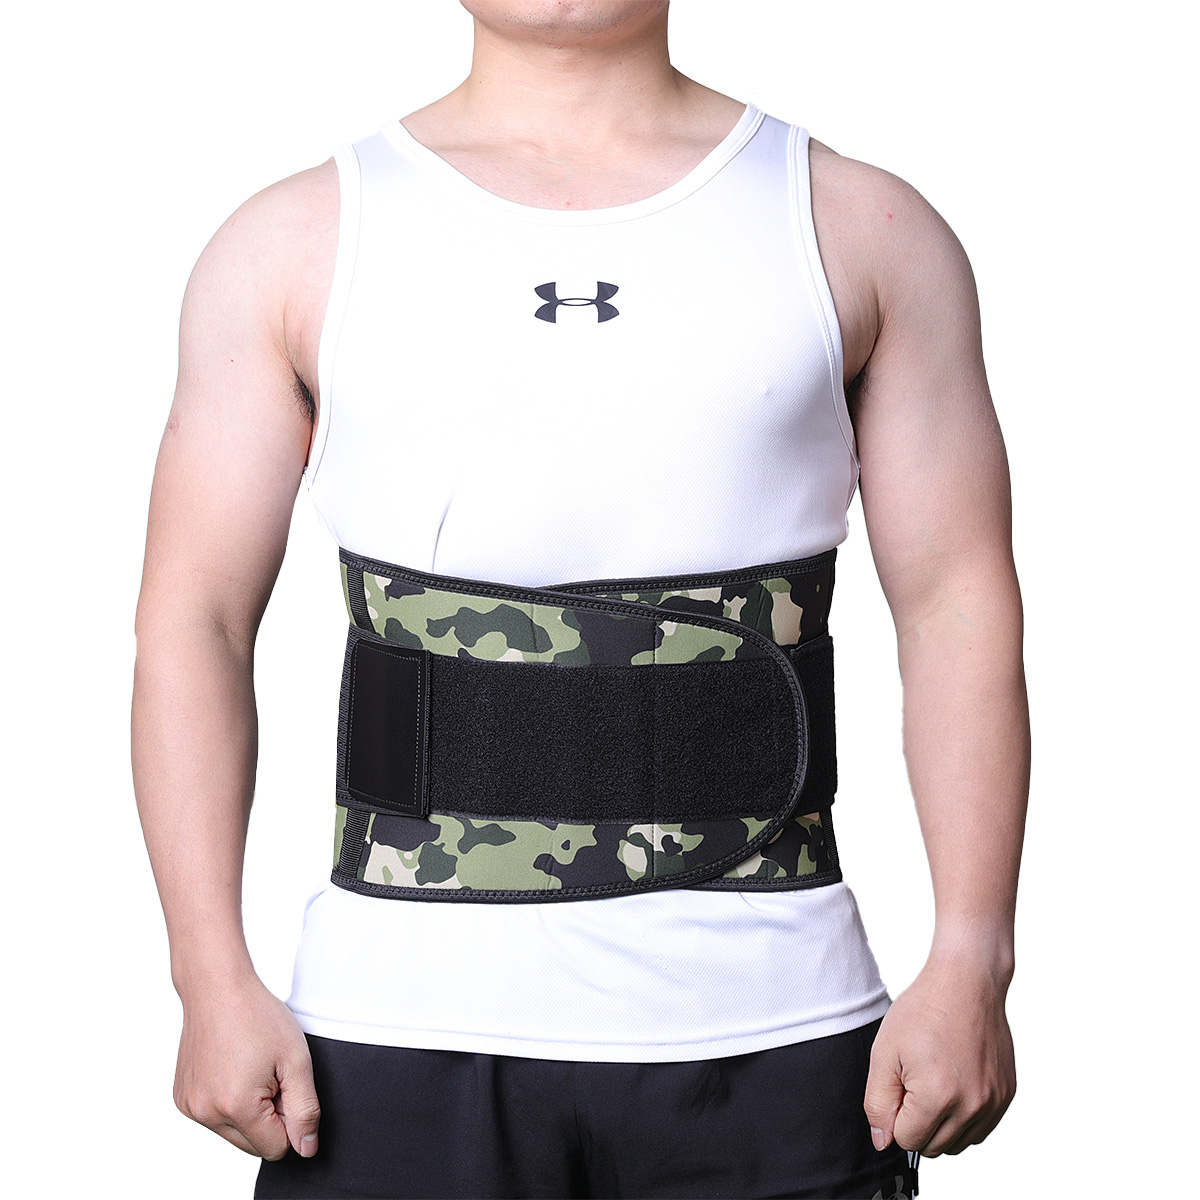 Popular Design for Waist Belt For Back Pain – Men Customized Fitness Waist Support Belt – Senyu